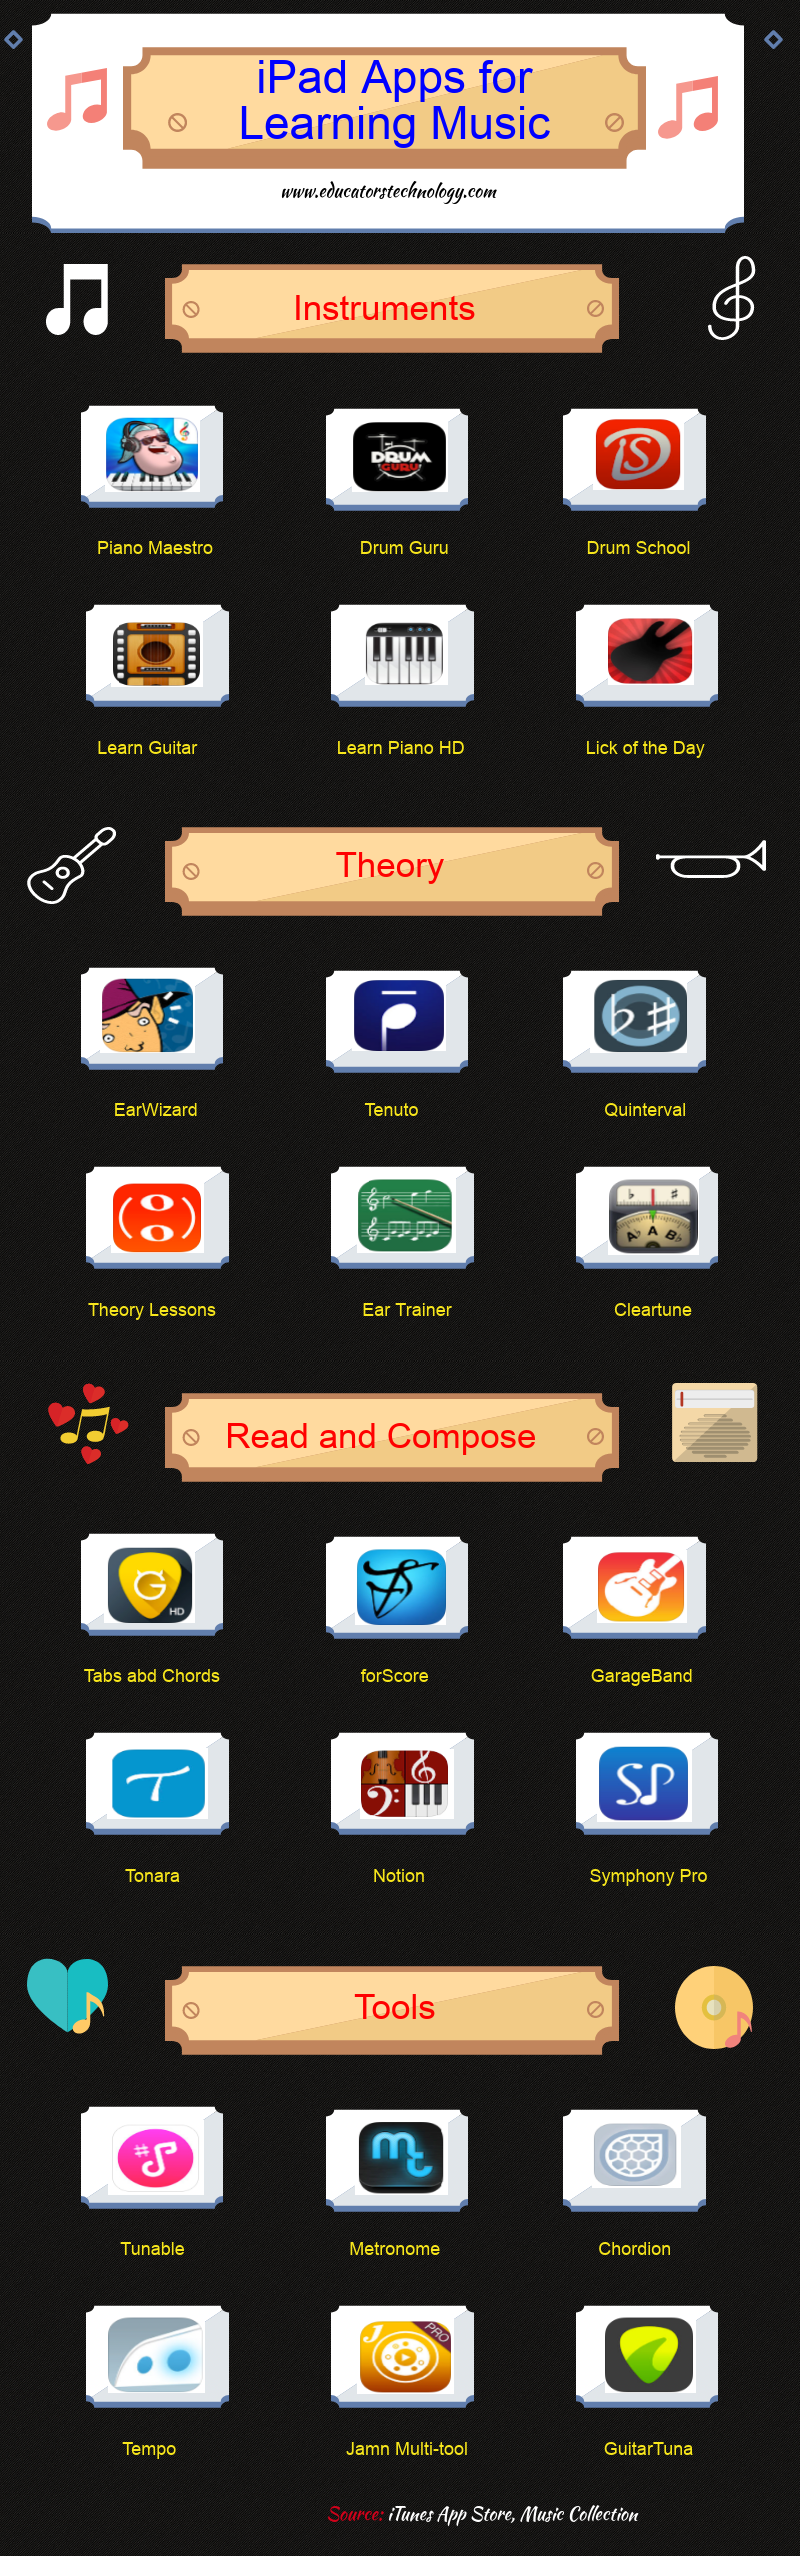 24 Good iPad Apps for Music Teachers